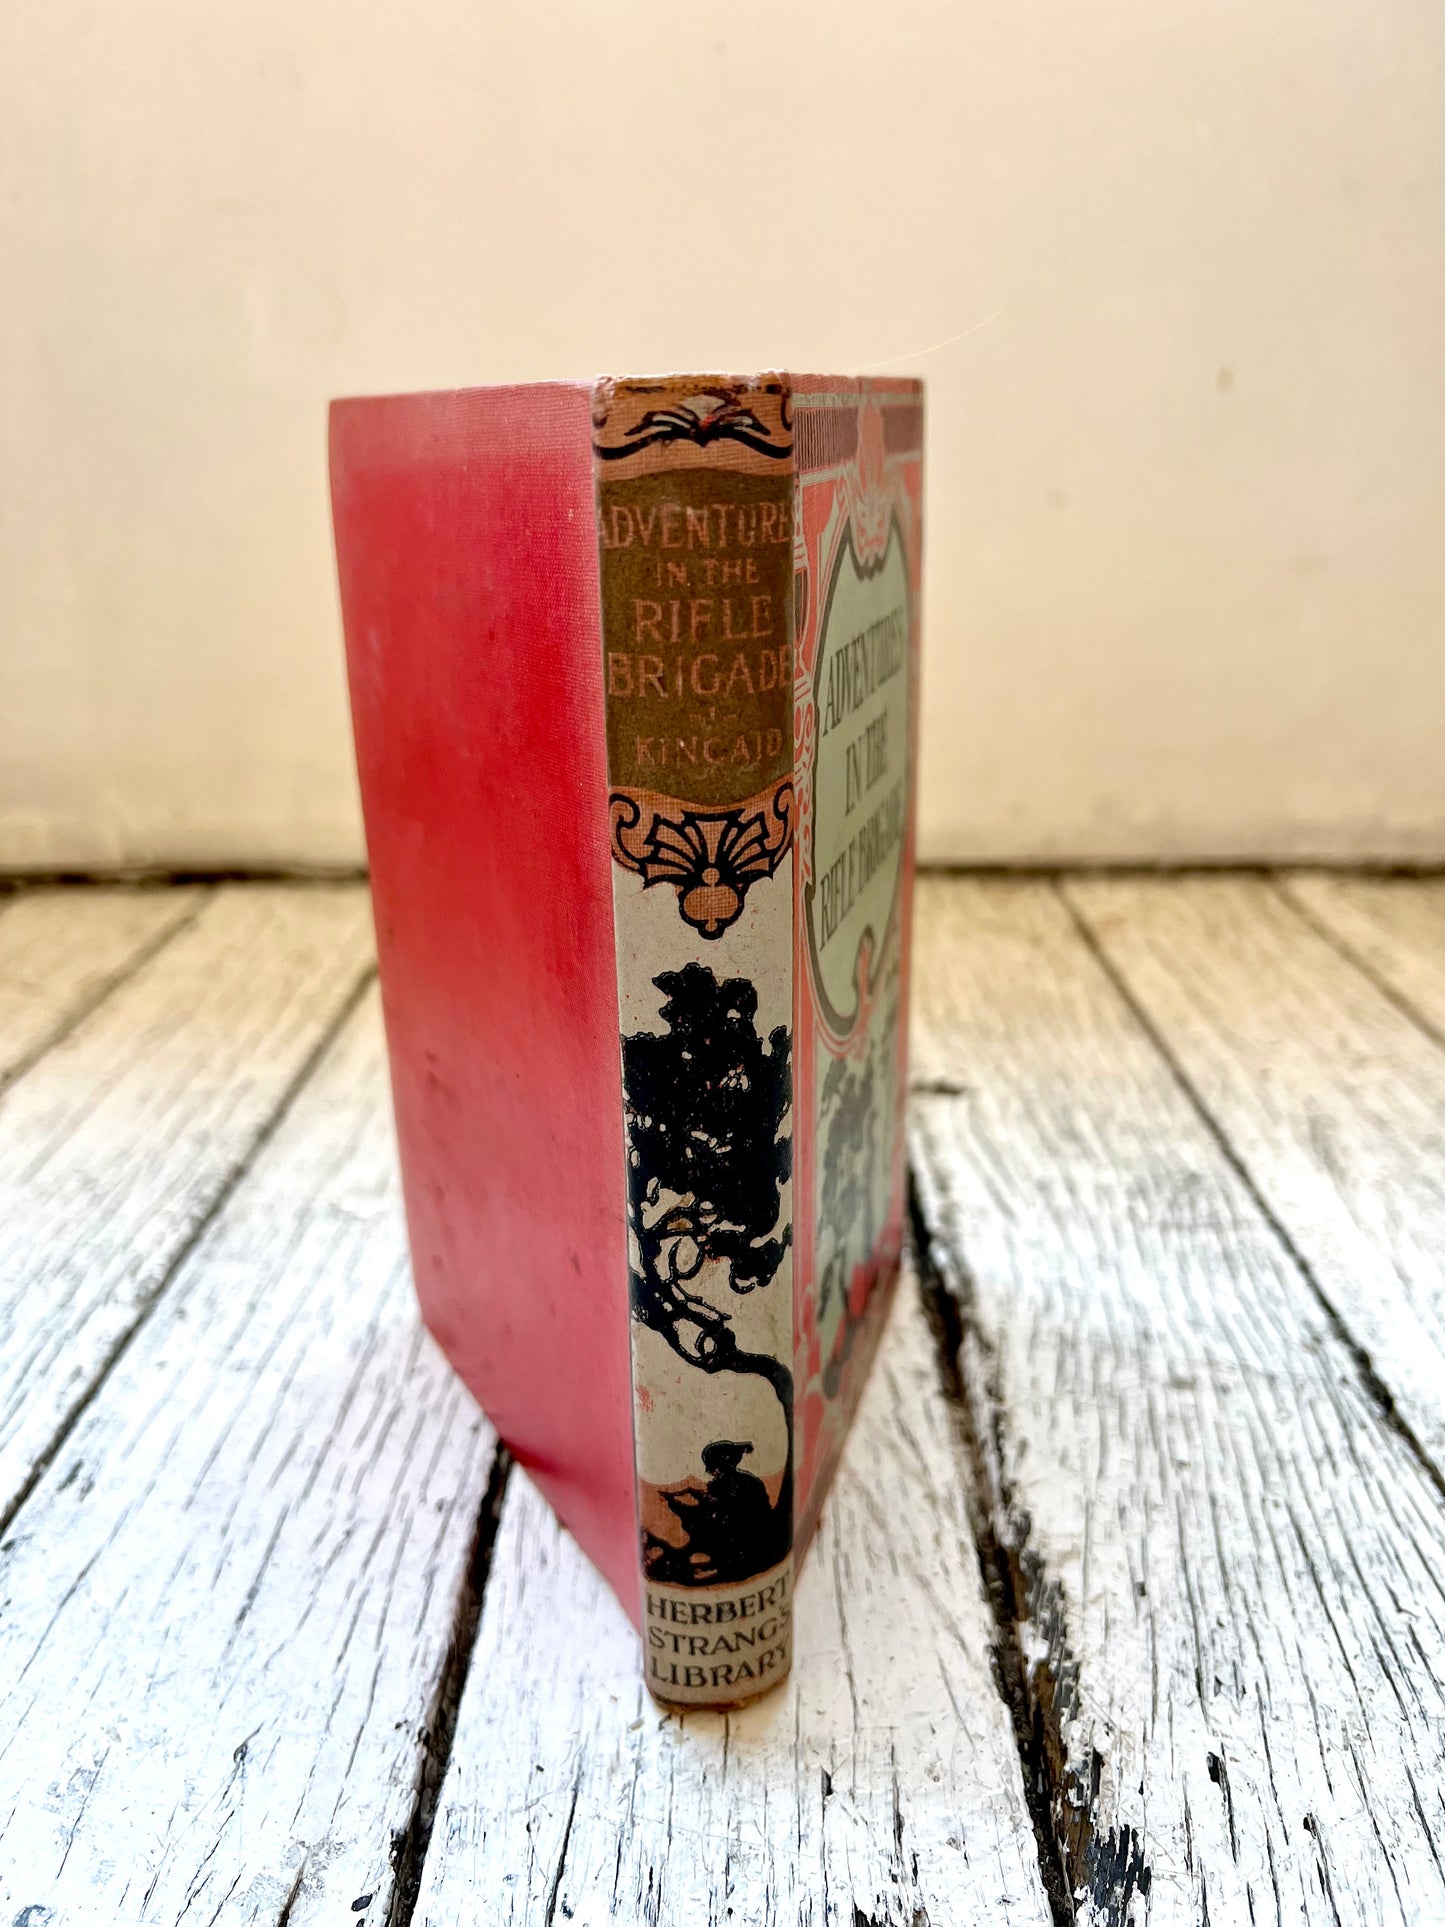 古董精装本《步枪旅历险记》一书，作者是约翰·金凯德爵士，赫伯特·斯特朗图书馆，1919 年版。